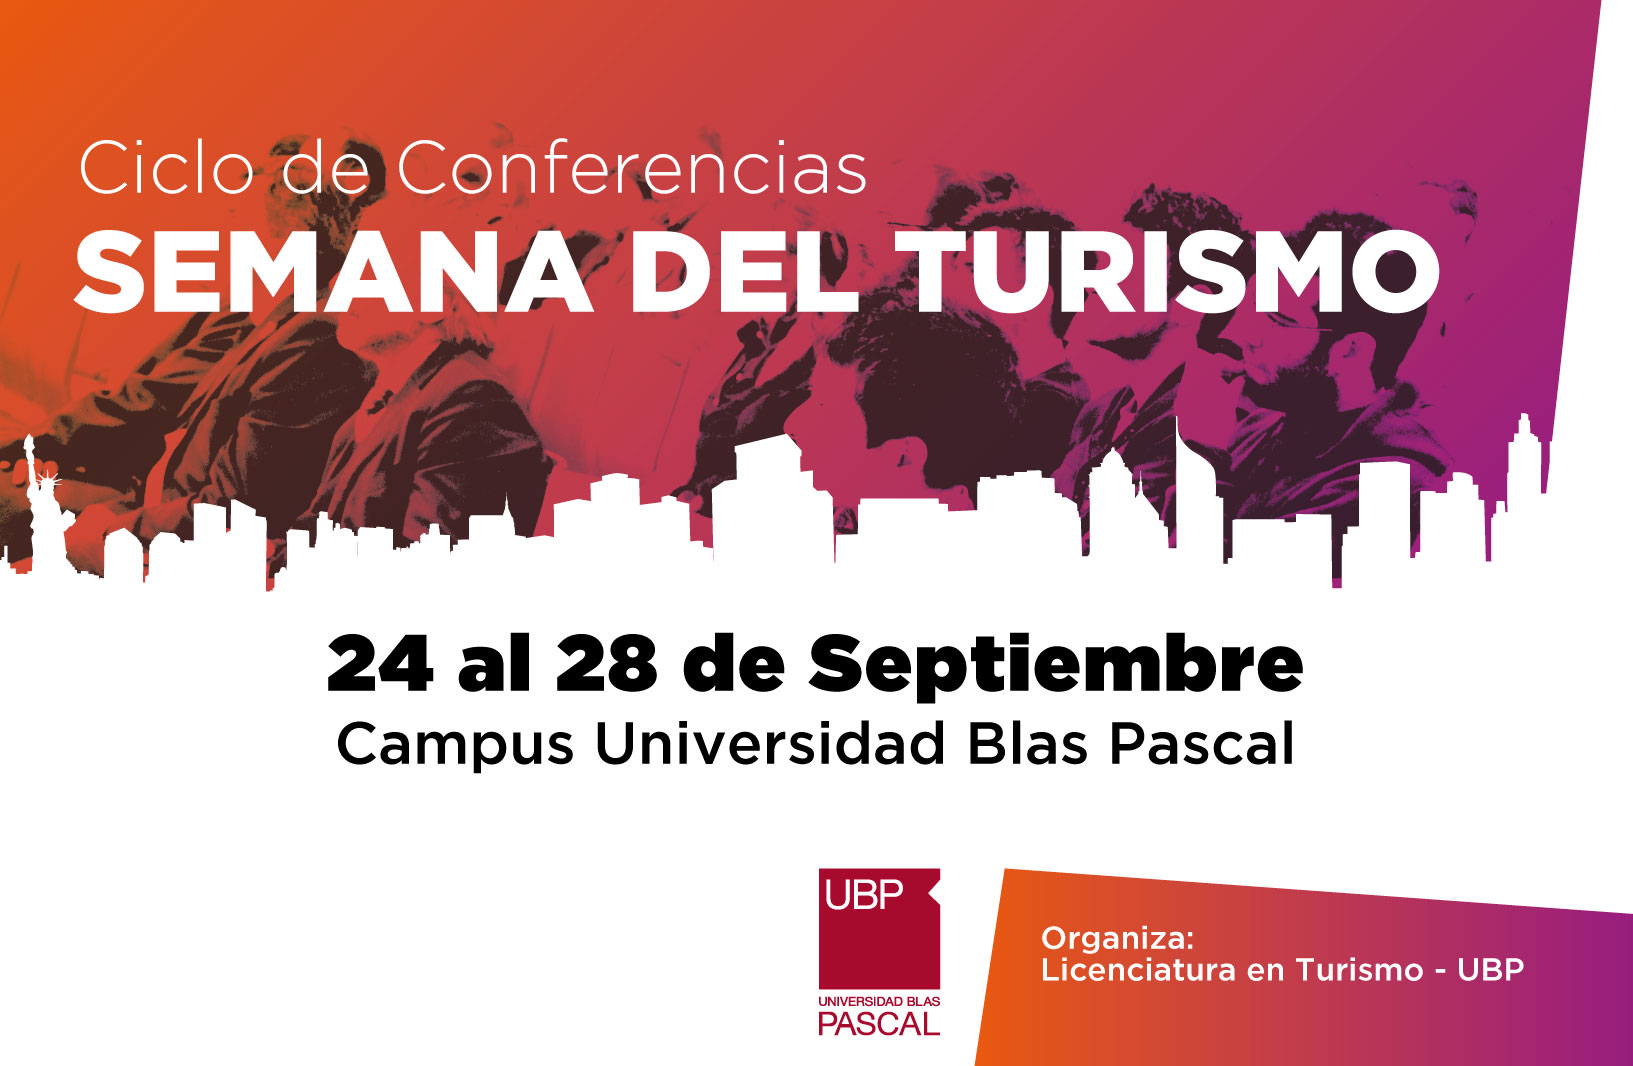 Ciclo de conferencias sobre Turismo